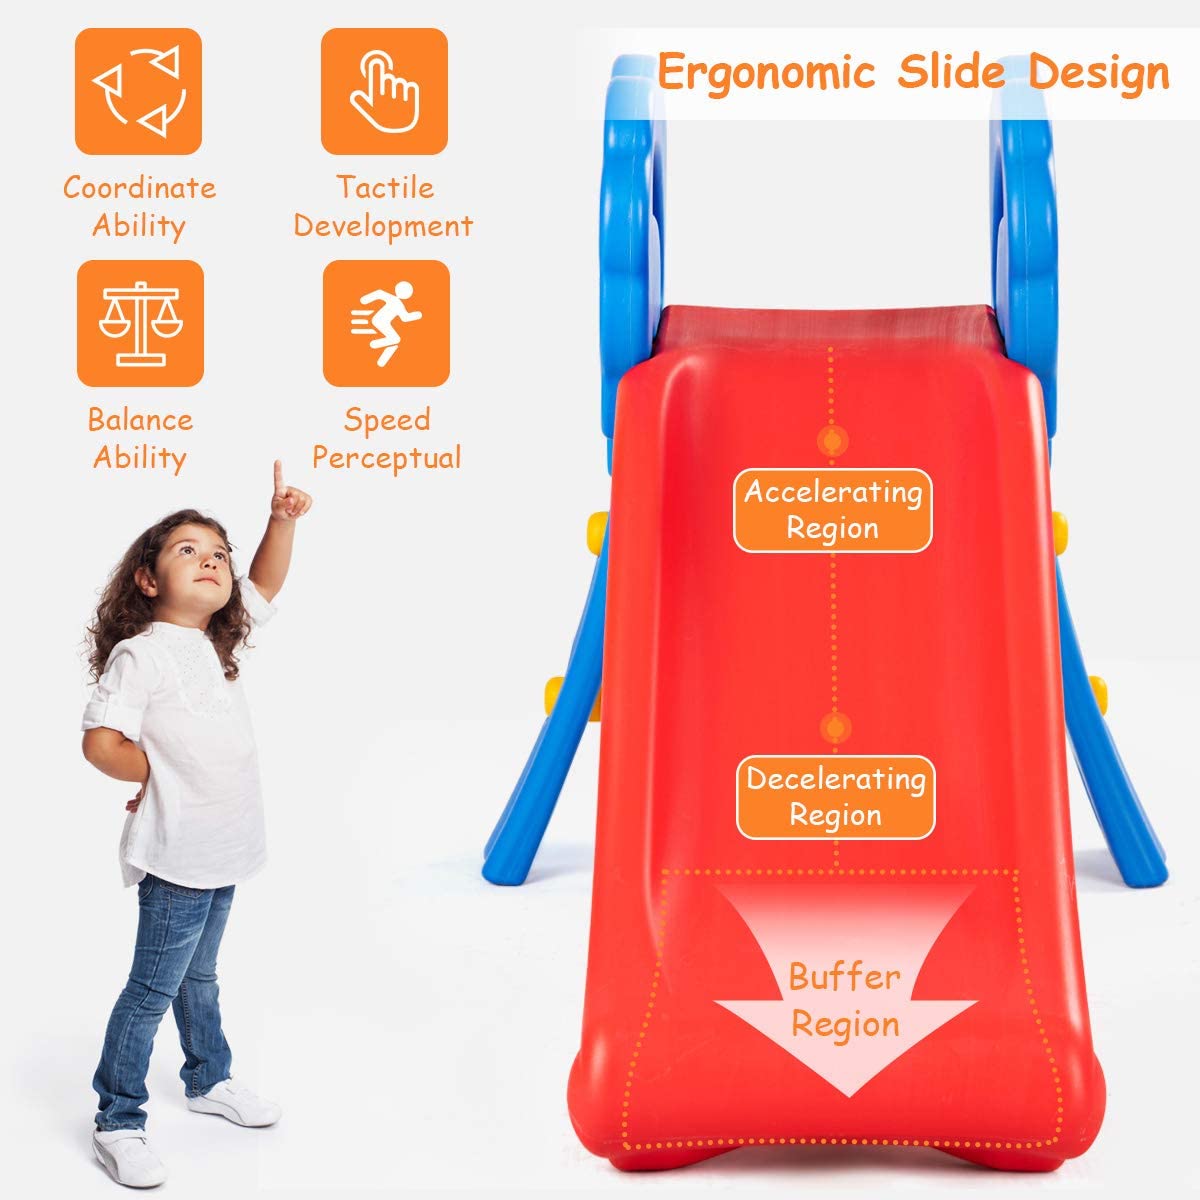 BABY JOY Folding Slide, Plastic Play Slide Climber for Kids (Floral Rail)